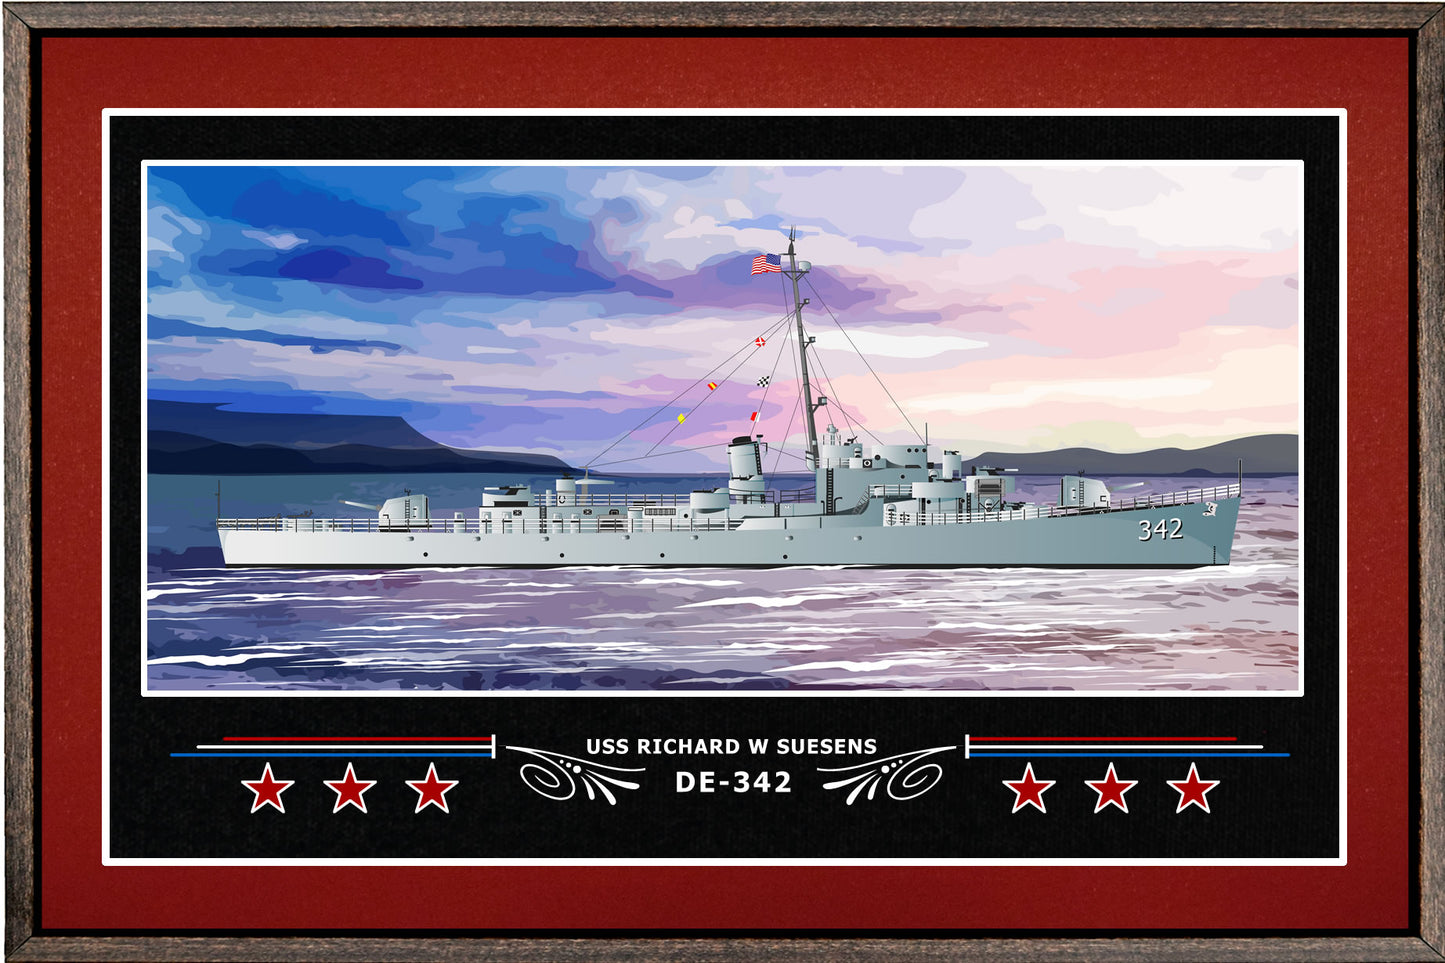 USS RICHARD W SUESENS DE 342 BOX FRAMED CANVAS ART BURGUNDY